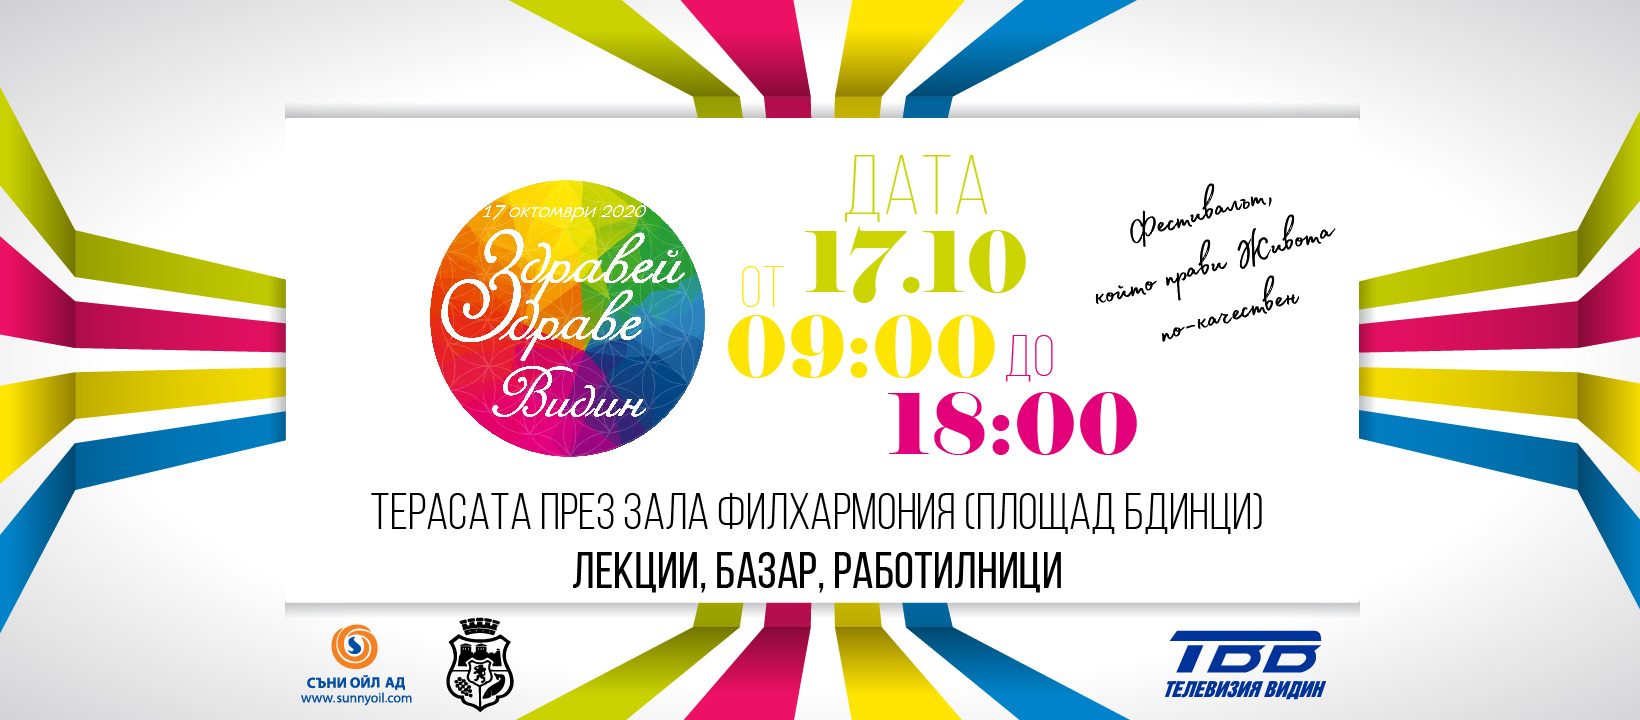 Фестивалът „Здравей, Здраве“ се провежда във Видин за трета поредна година